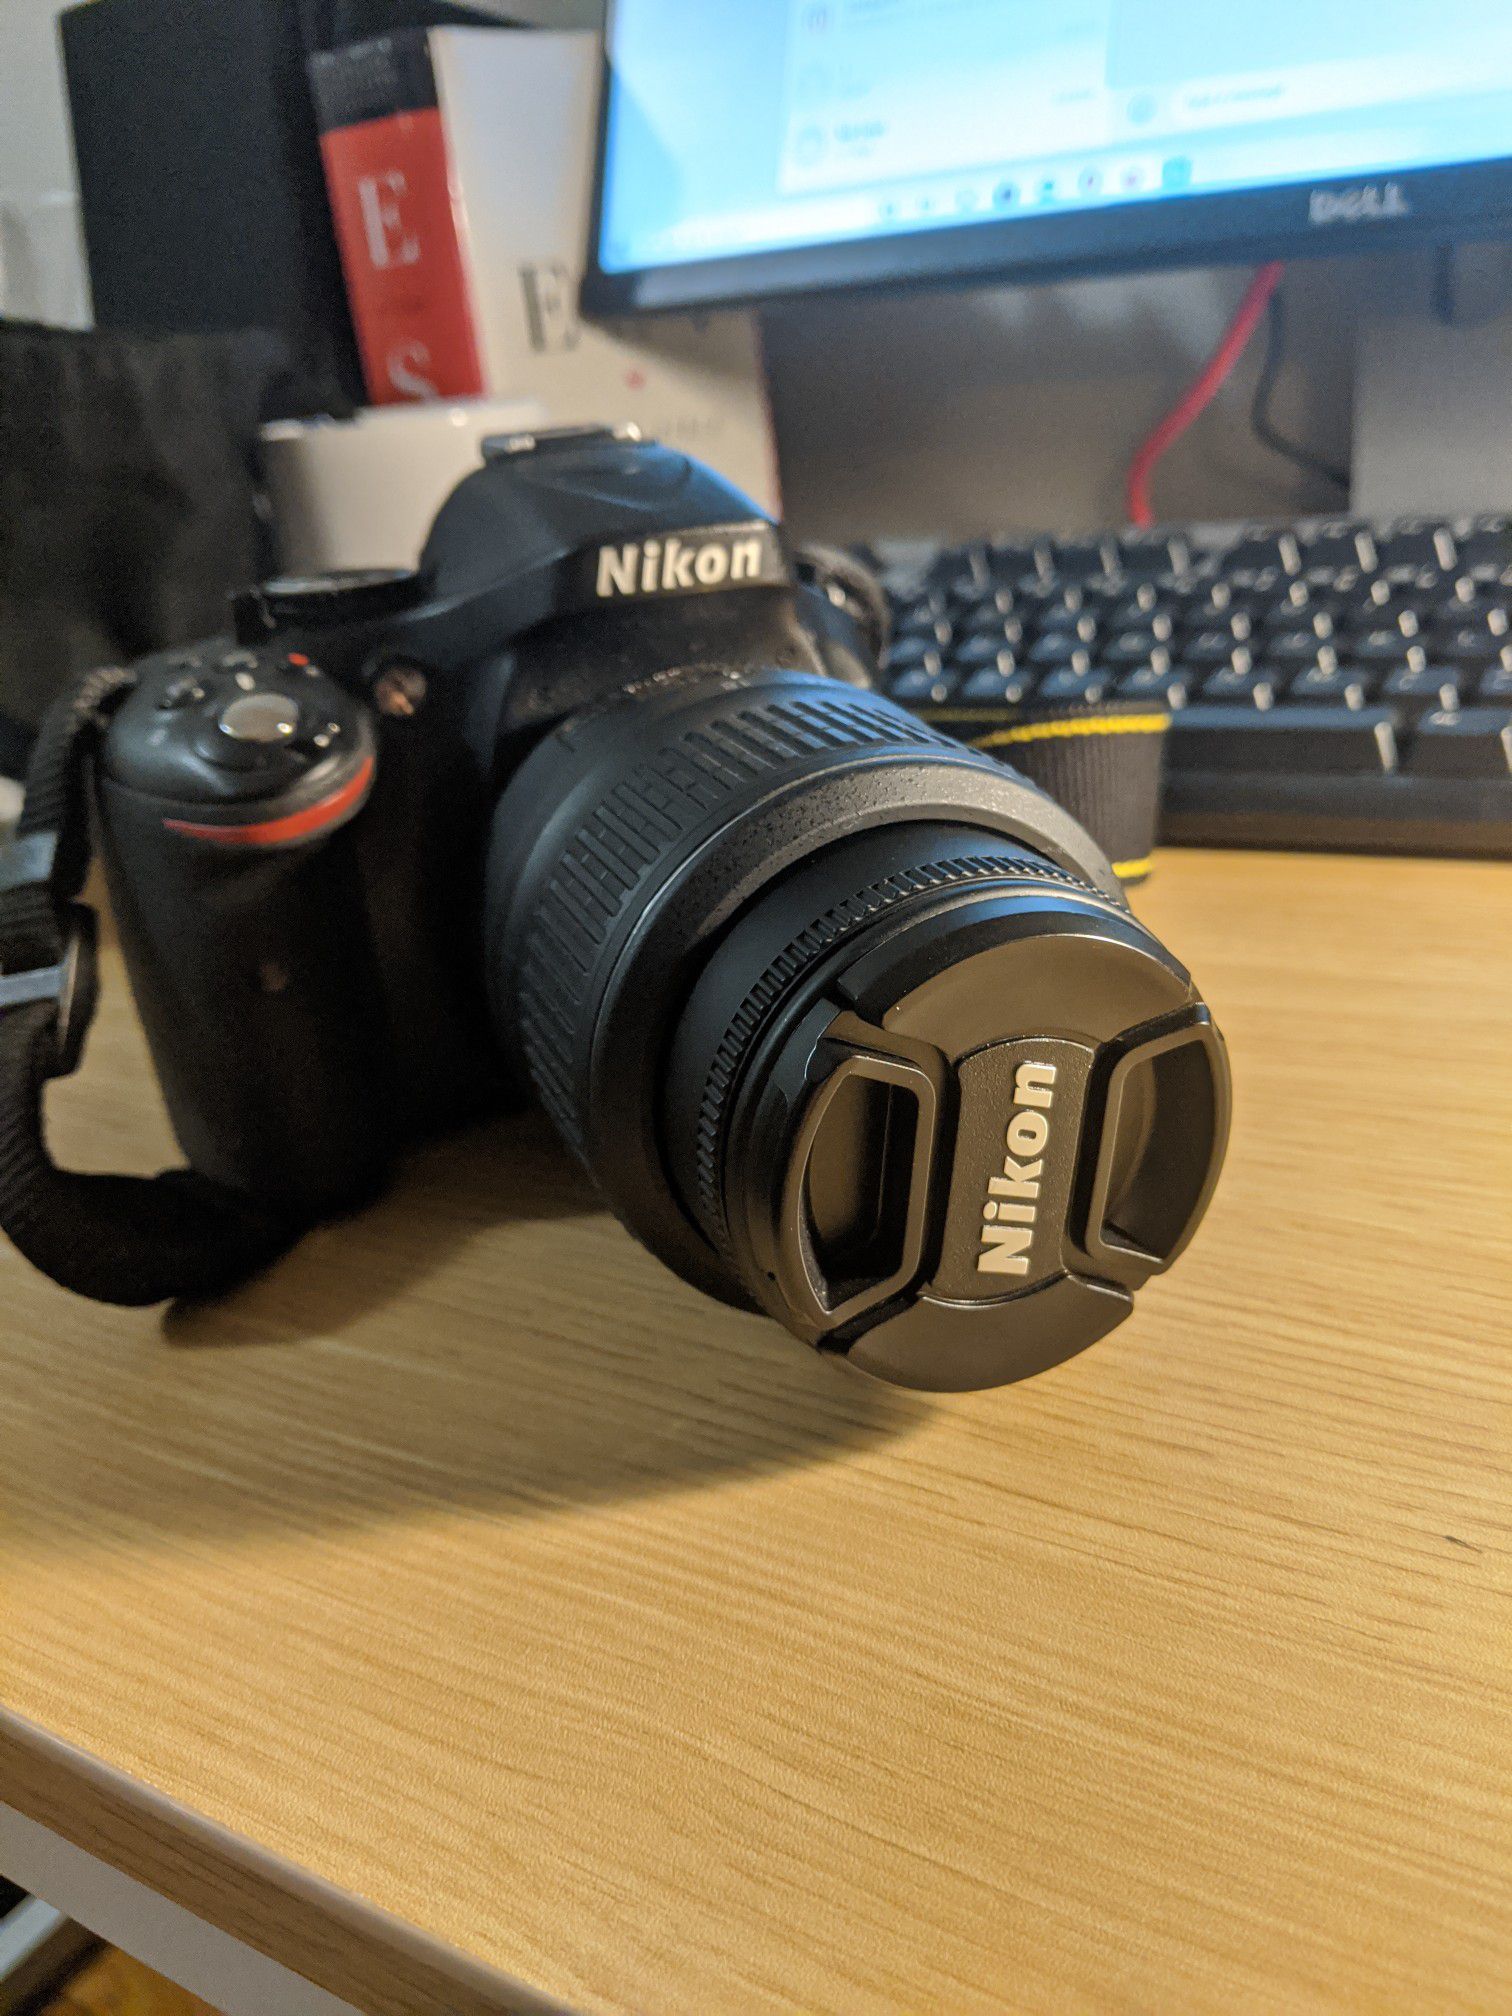 Nikon D5200 DSLR camera